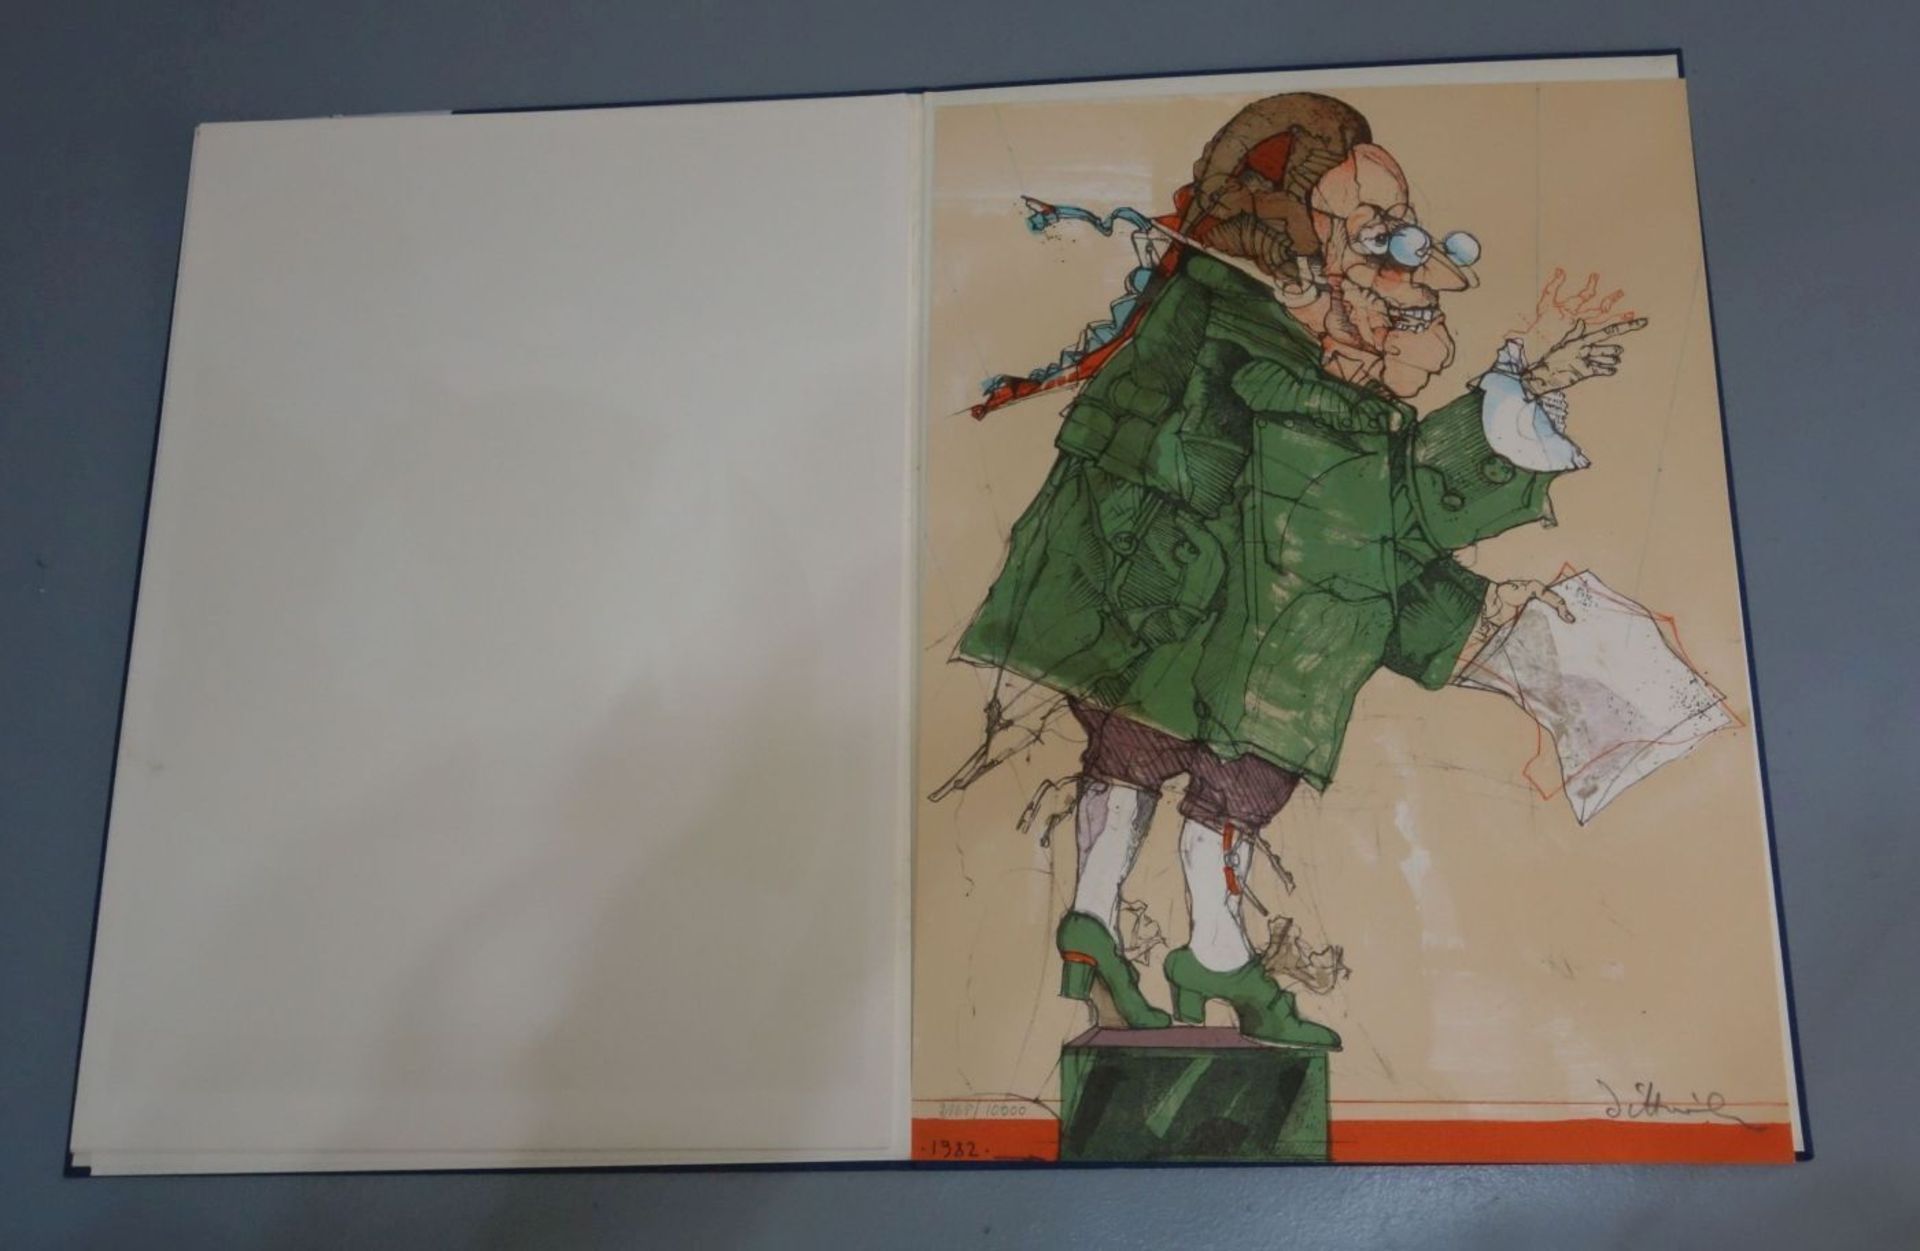 MAPPE: "DIE KUNST DER GRAFIK", 1982, mit 6 FARBLITHOGRAFIEN: ANTES, ADAMI, BRUNI, WUNDERLICH, BAJ UN - Bild 3 aus 3